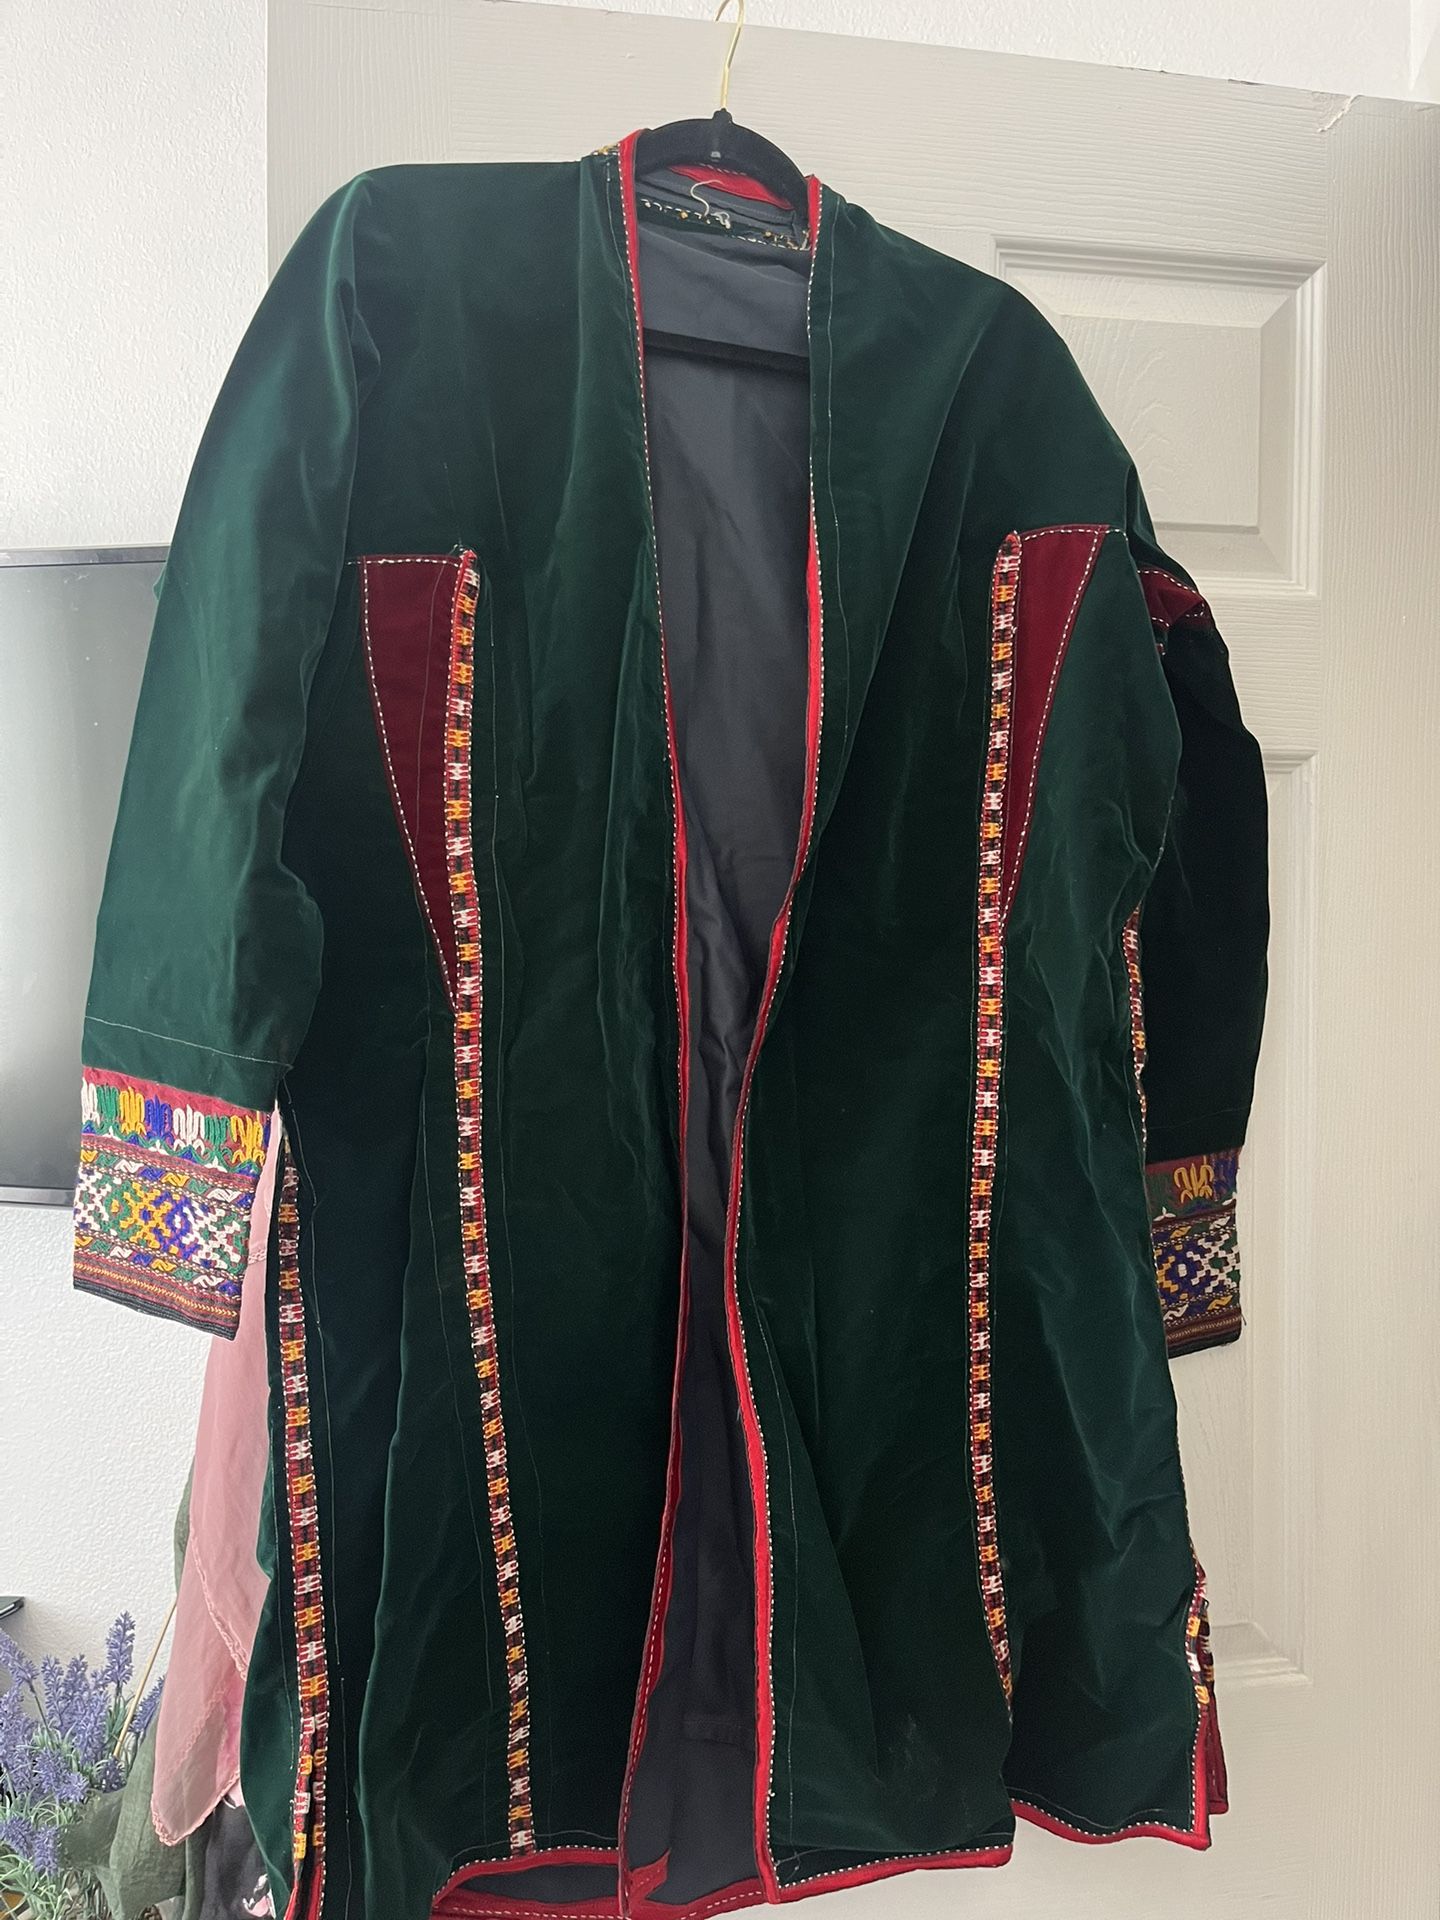 Afghan Coats (handmade)